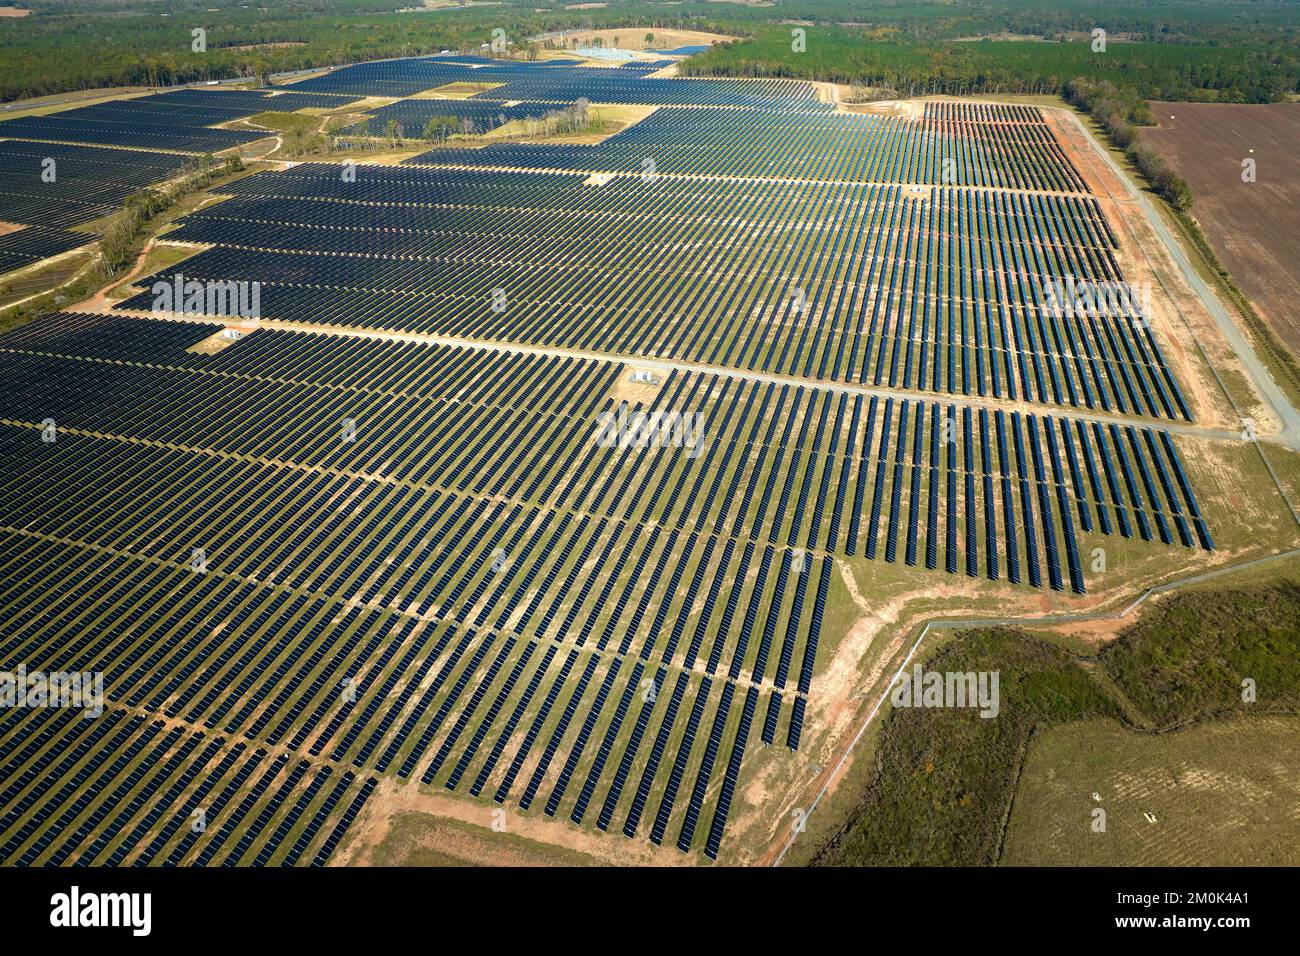 Luftaufnahme eines großen nachhaltigen Elektrokraftwerks mit Reihen von Photovoltaik-Solarmodulen zur Erzeugung sauberer elektrischer Energie. Konzept von Stockfoto